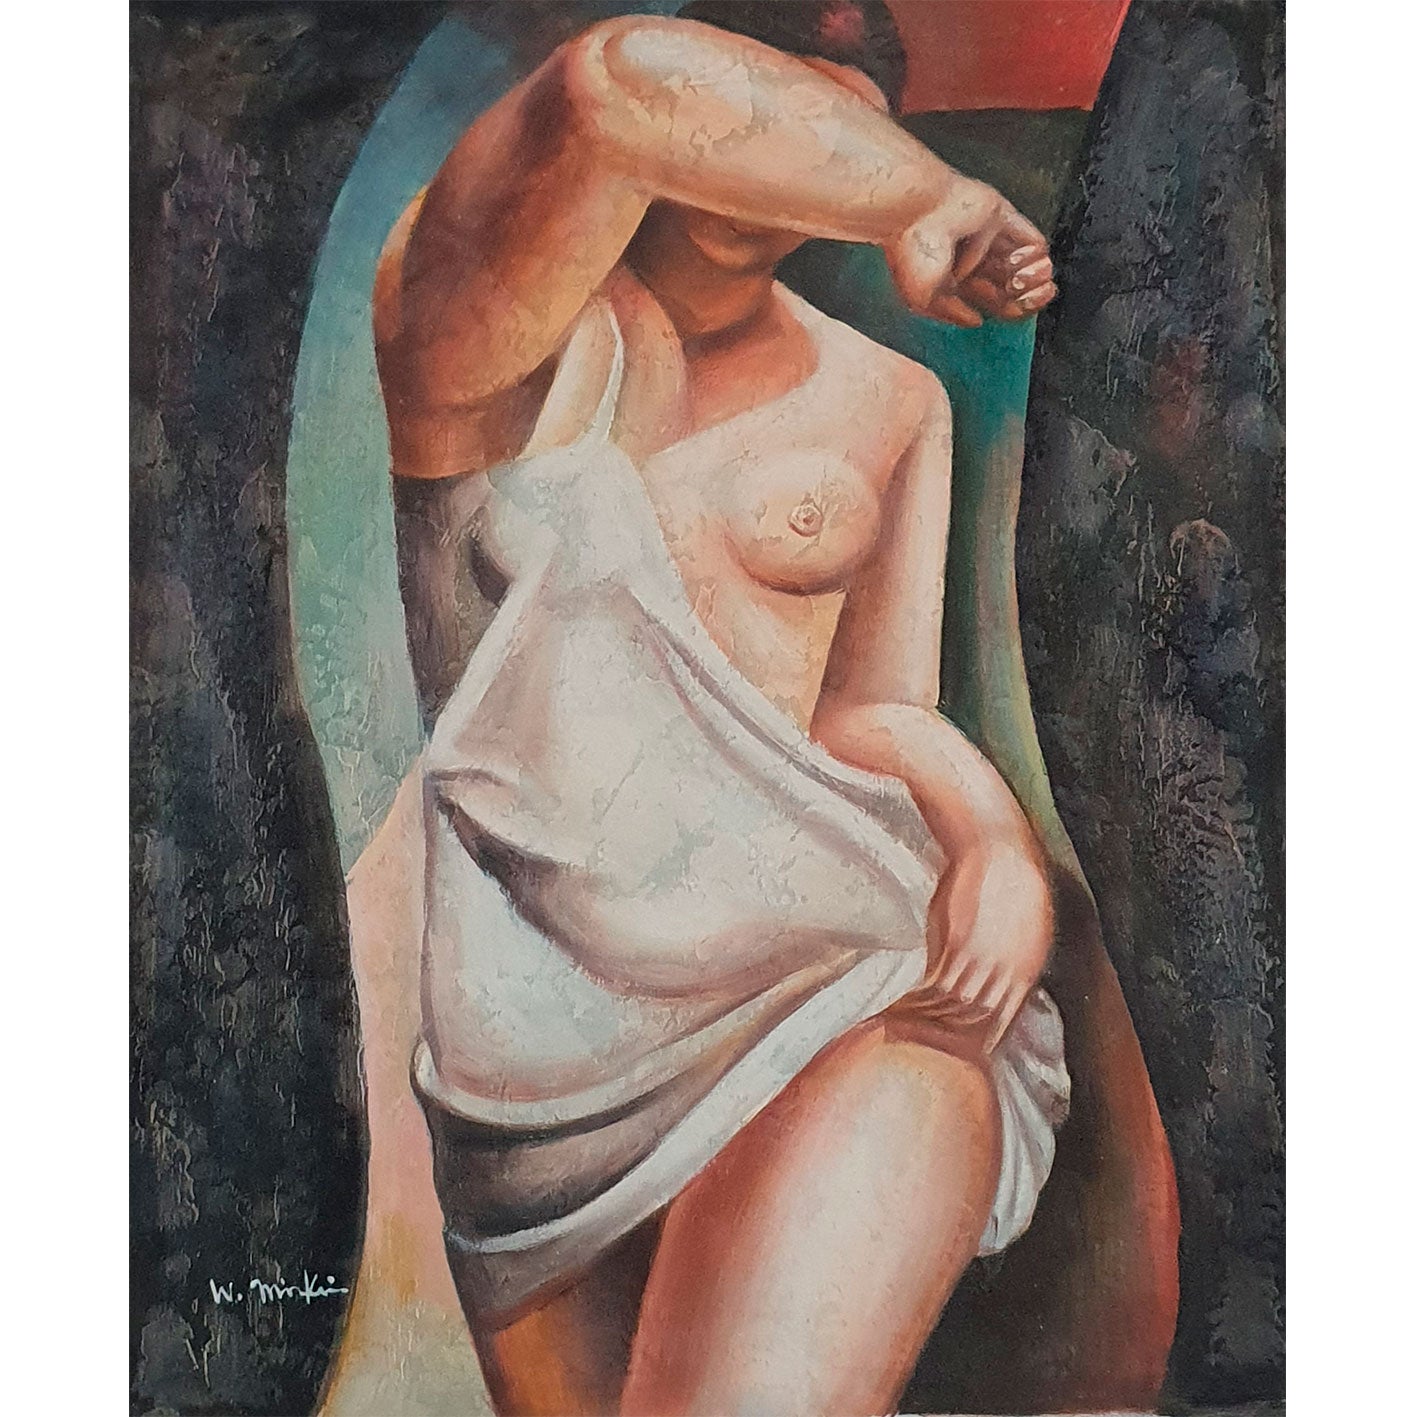 Gemälde Reproduktion Lempicka Ellenbogen